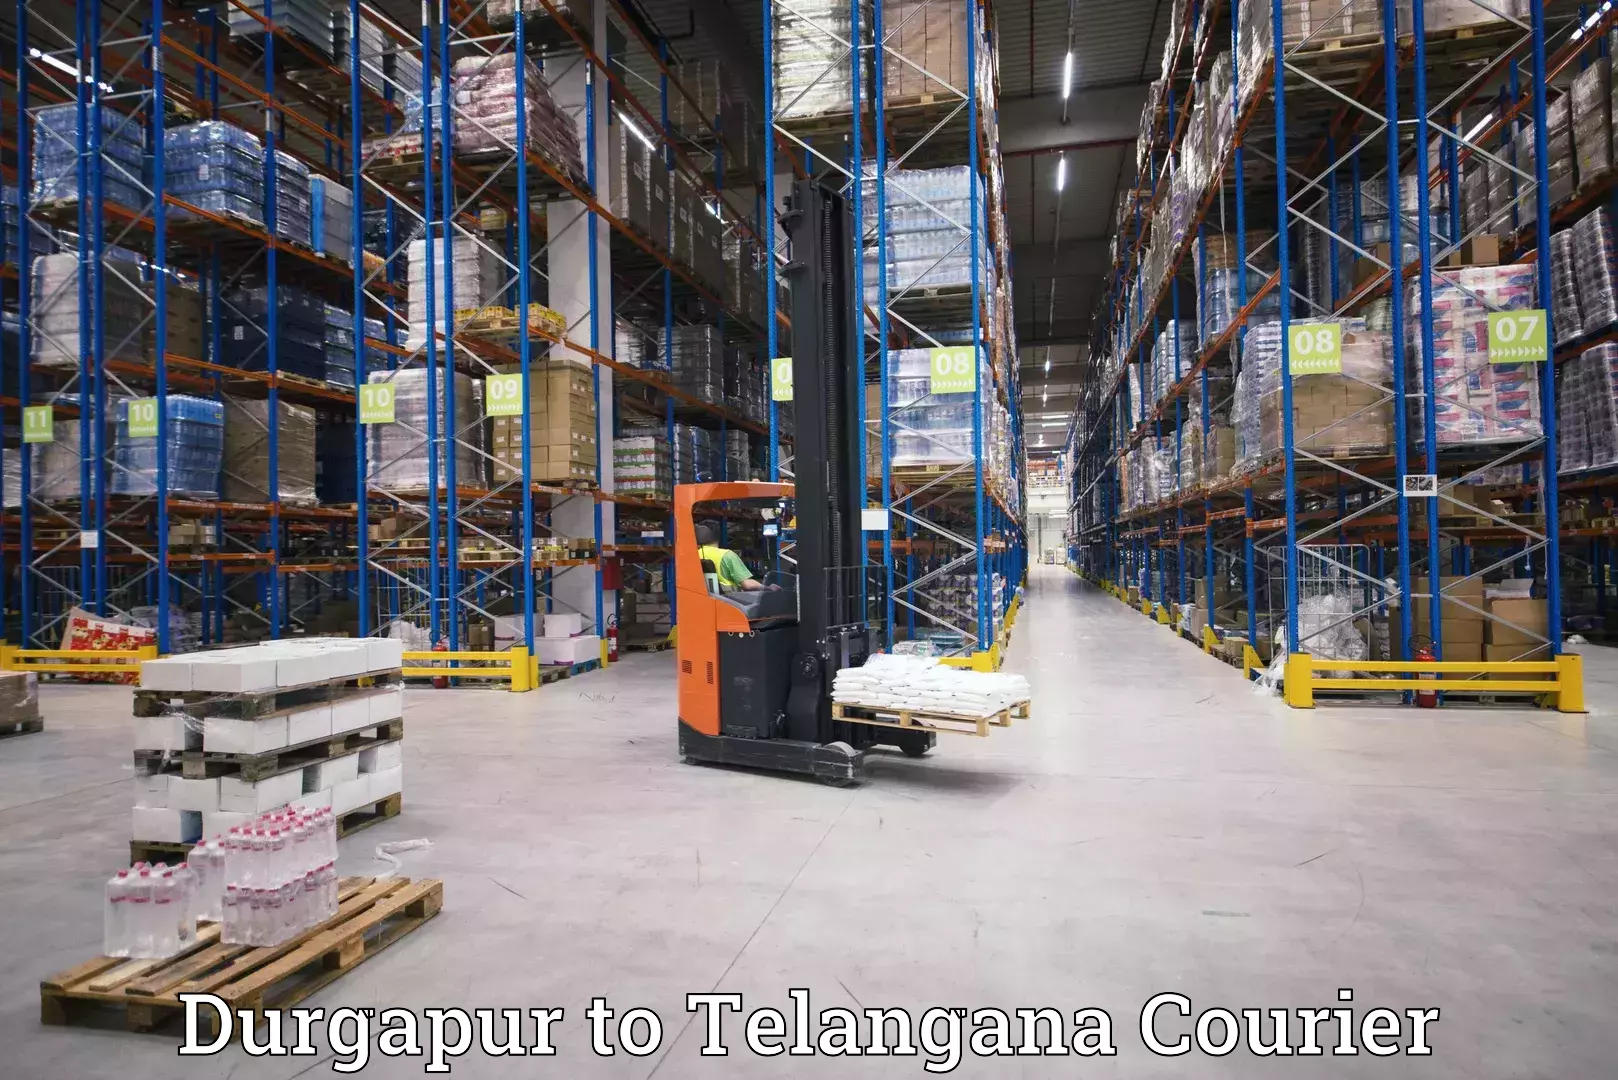 Logistics service provider Durgapur to Manuguru